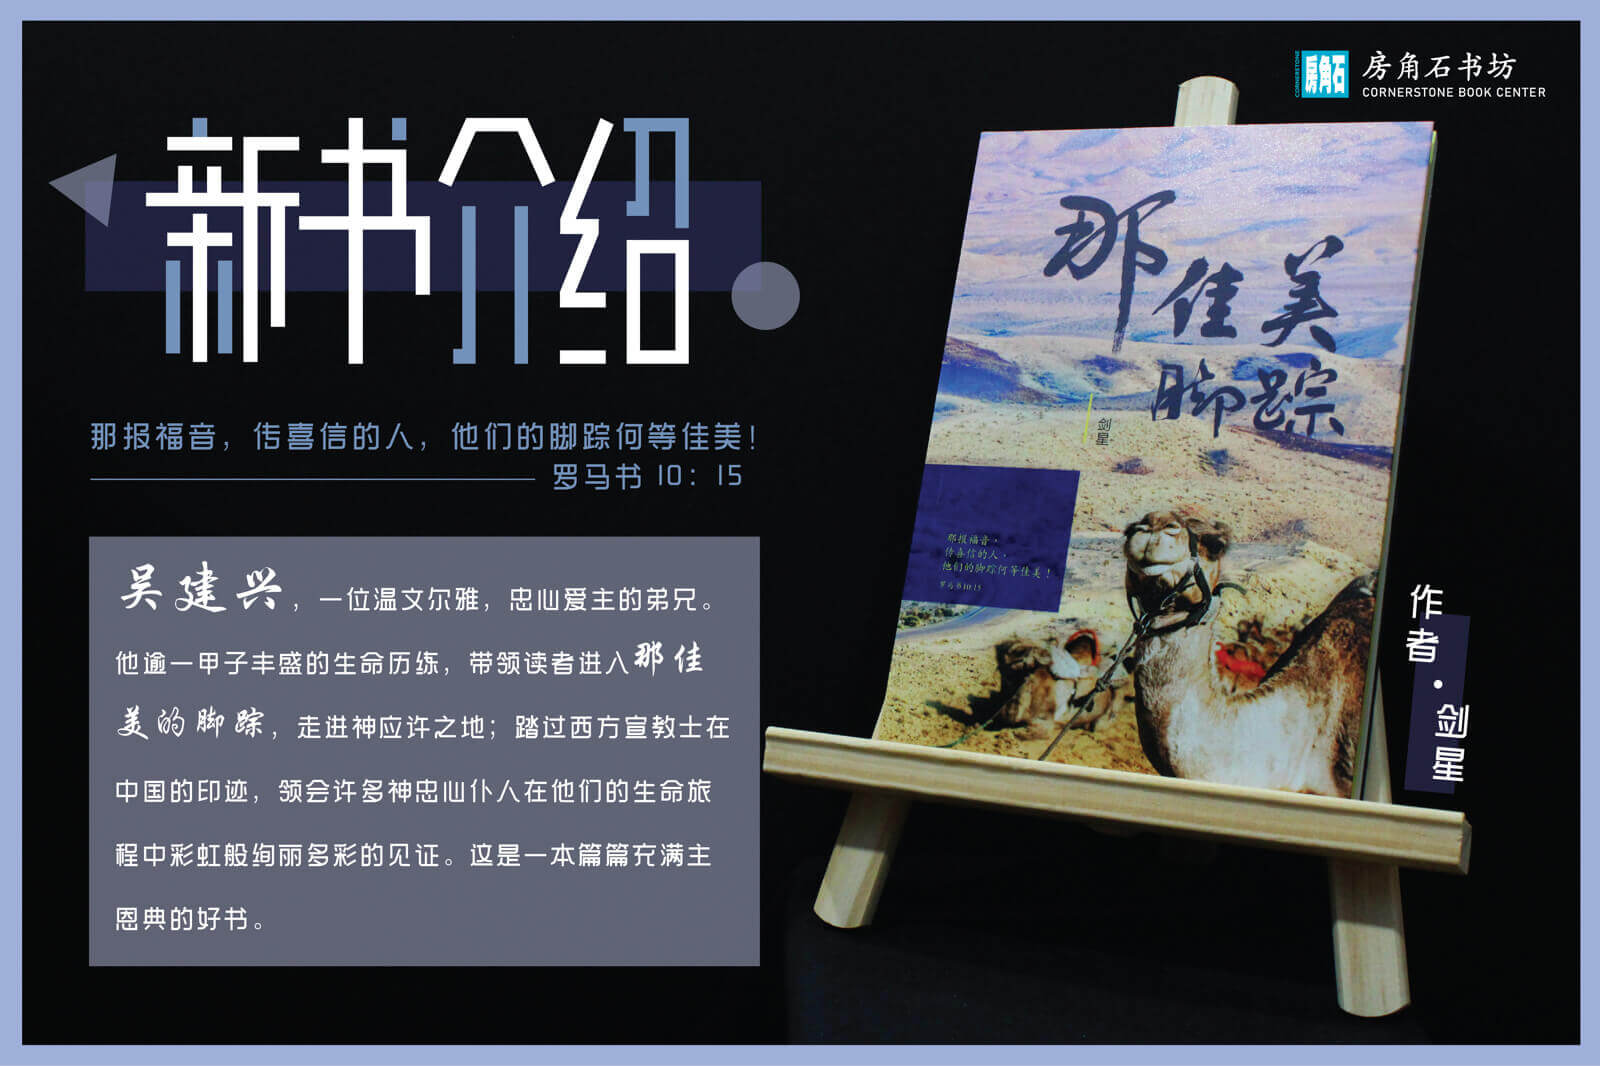 (暂停)Well Established Christian Chinese Book Store/ Training Business for Taking over